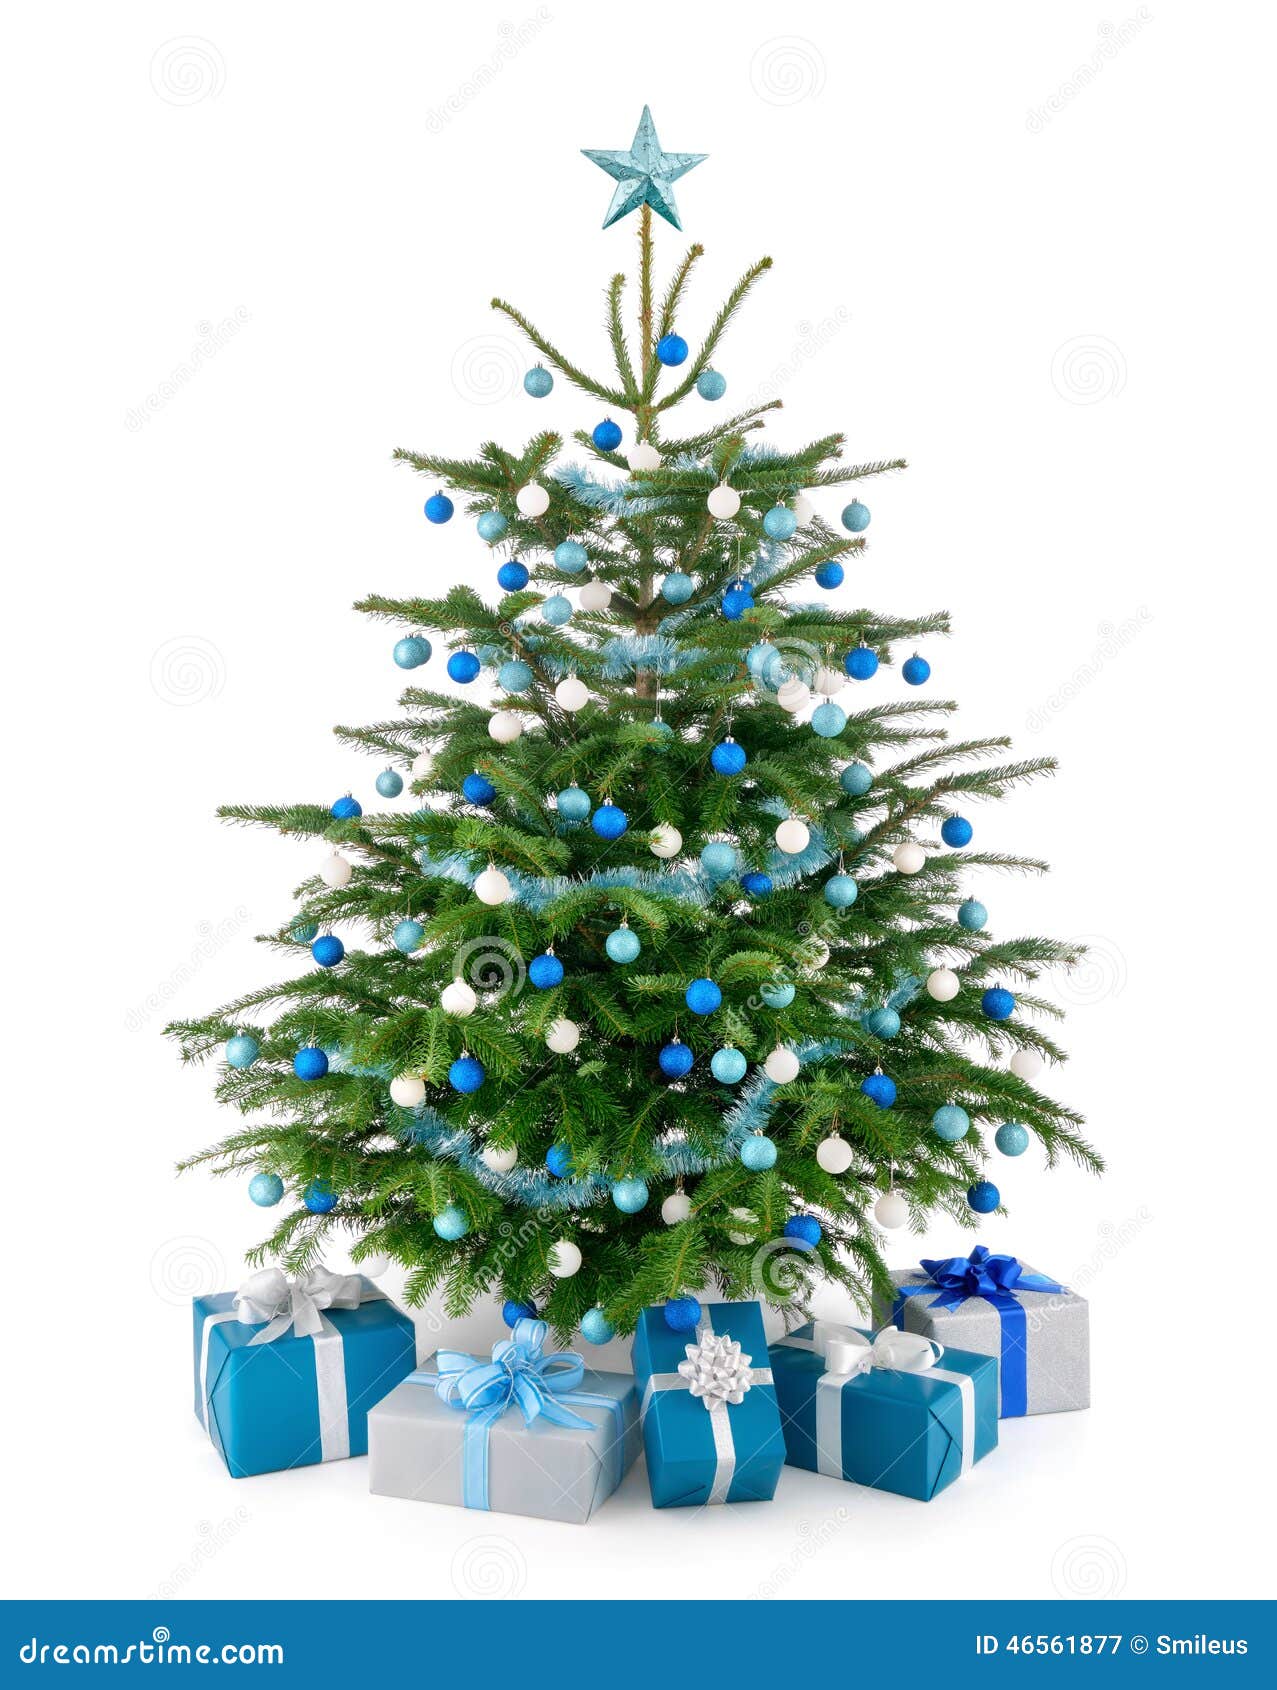 Kerstboom in Blauw Zilveren Met Giftdozen Stock Afbeelding - Image of vrolijk, geïsoleerd: 46561877